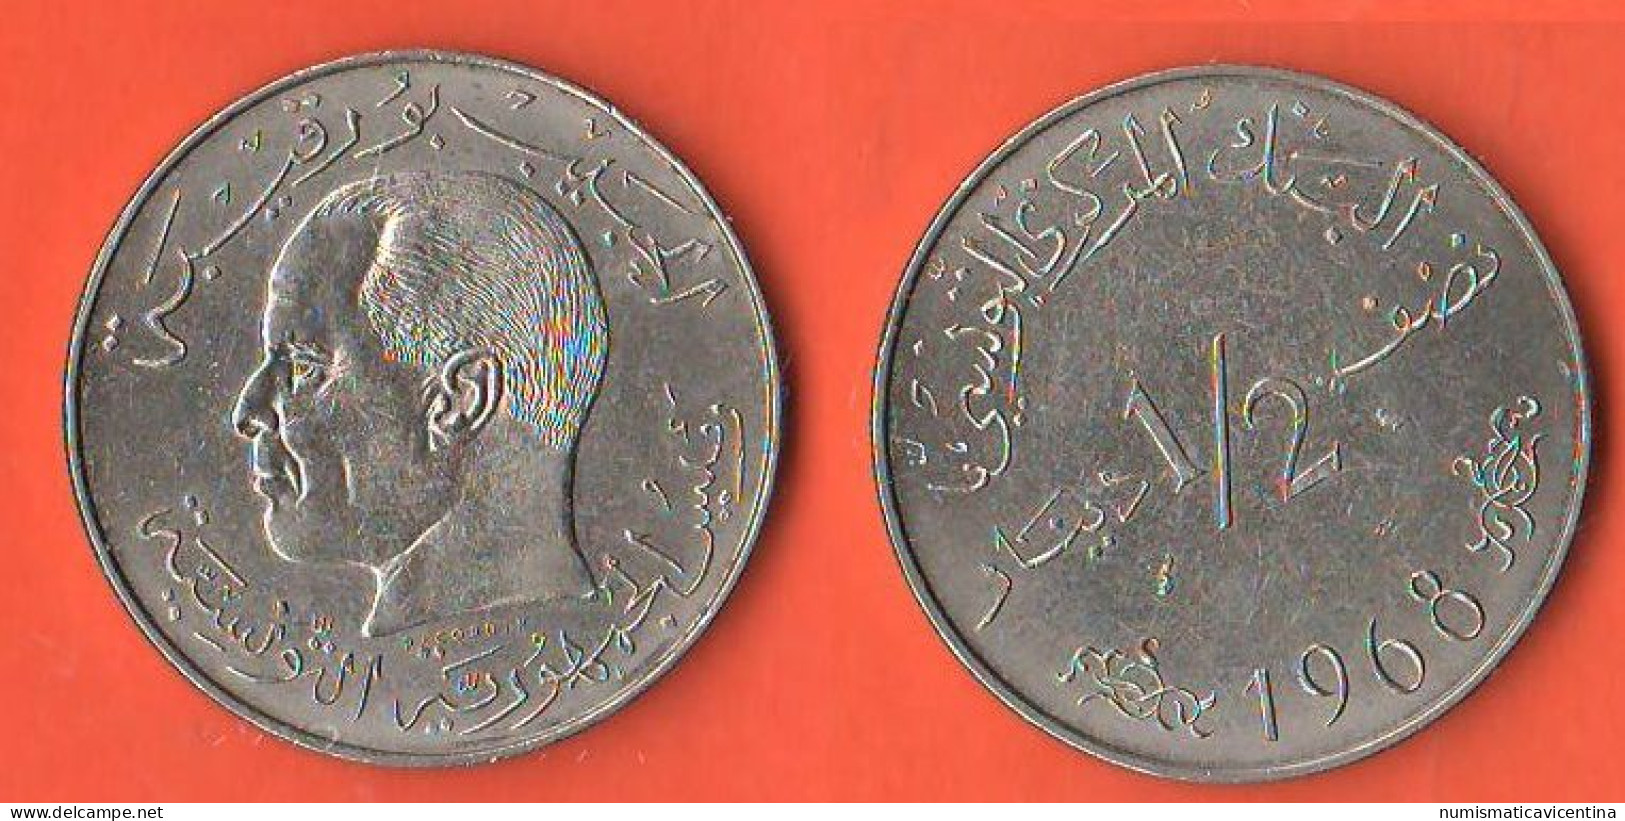 Tunisie 1/2 Dinar 1968 Tunisia Nickel Coin - Tunisie